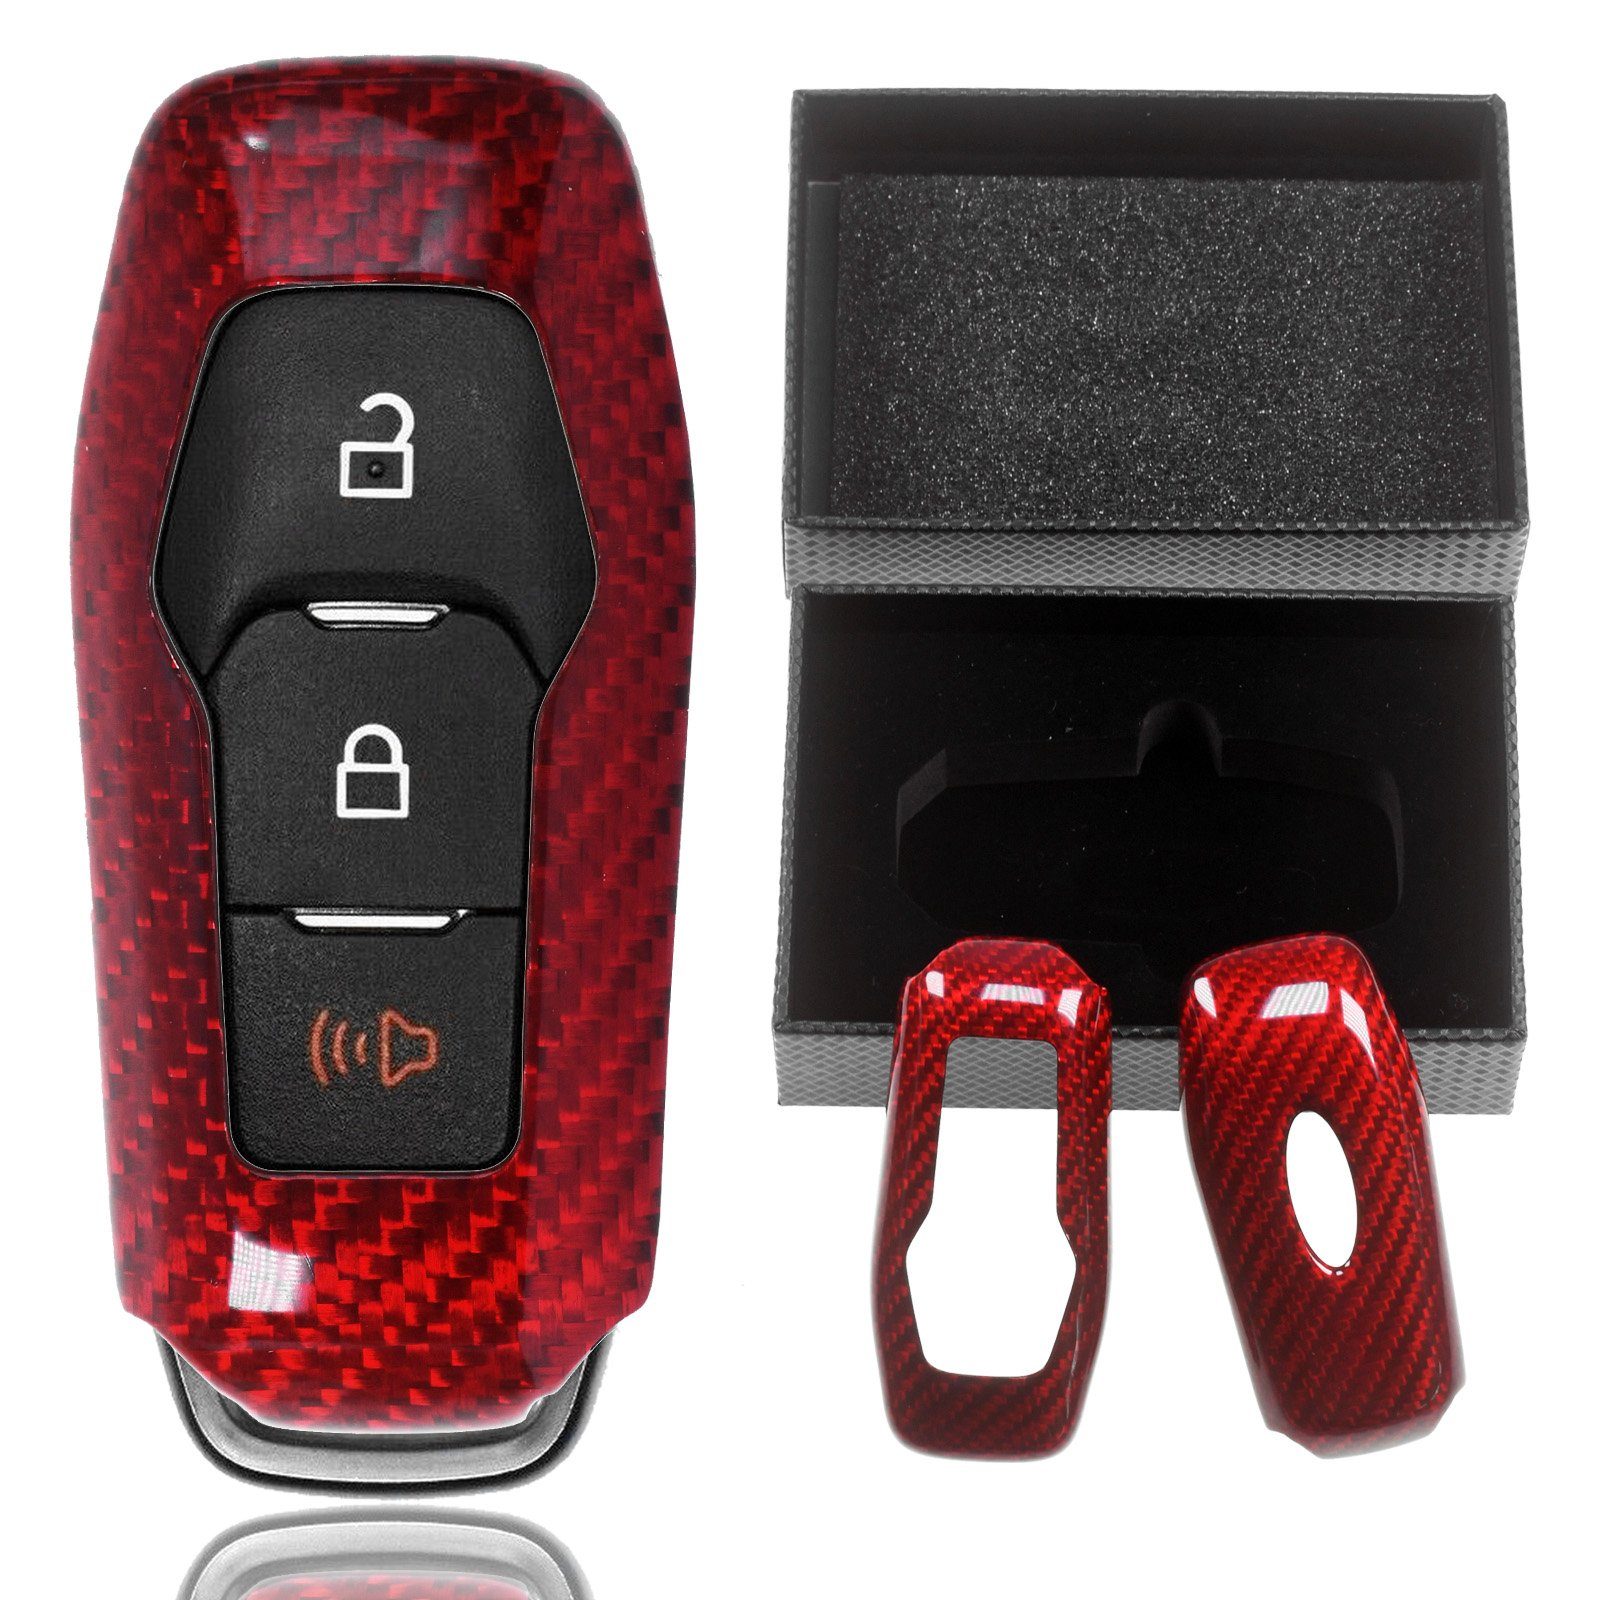 V KEYLESS Fiesta Schlüsseltasche Mondeo Schlüssel Auto KA+ Schutz Hülle C-Max Carbon-Optik Ford VII Grand für SMARTKEY T-Carbon Rot,